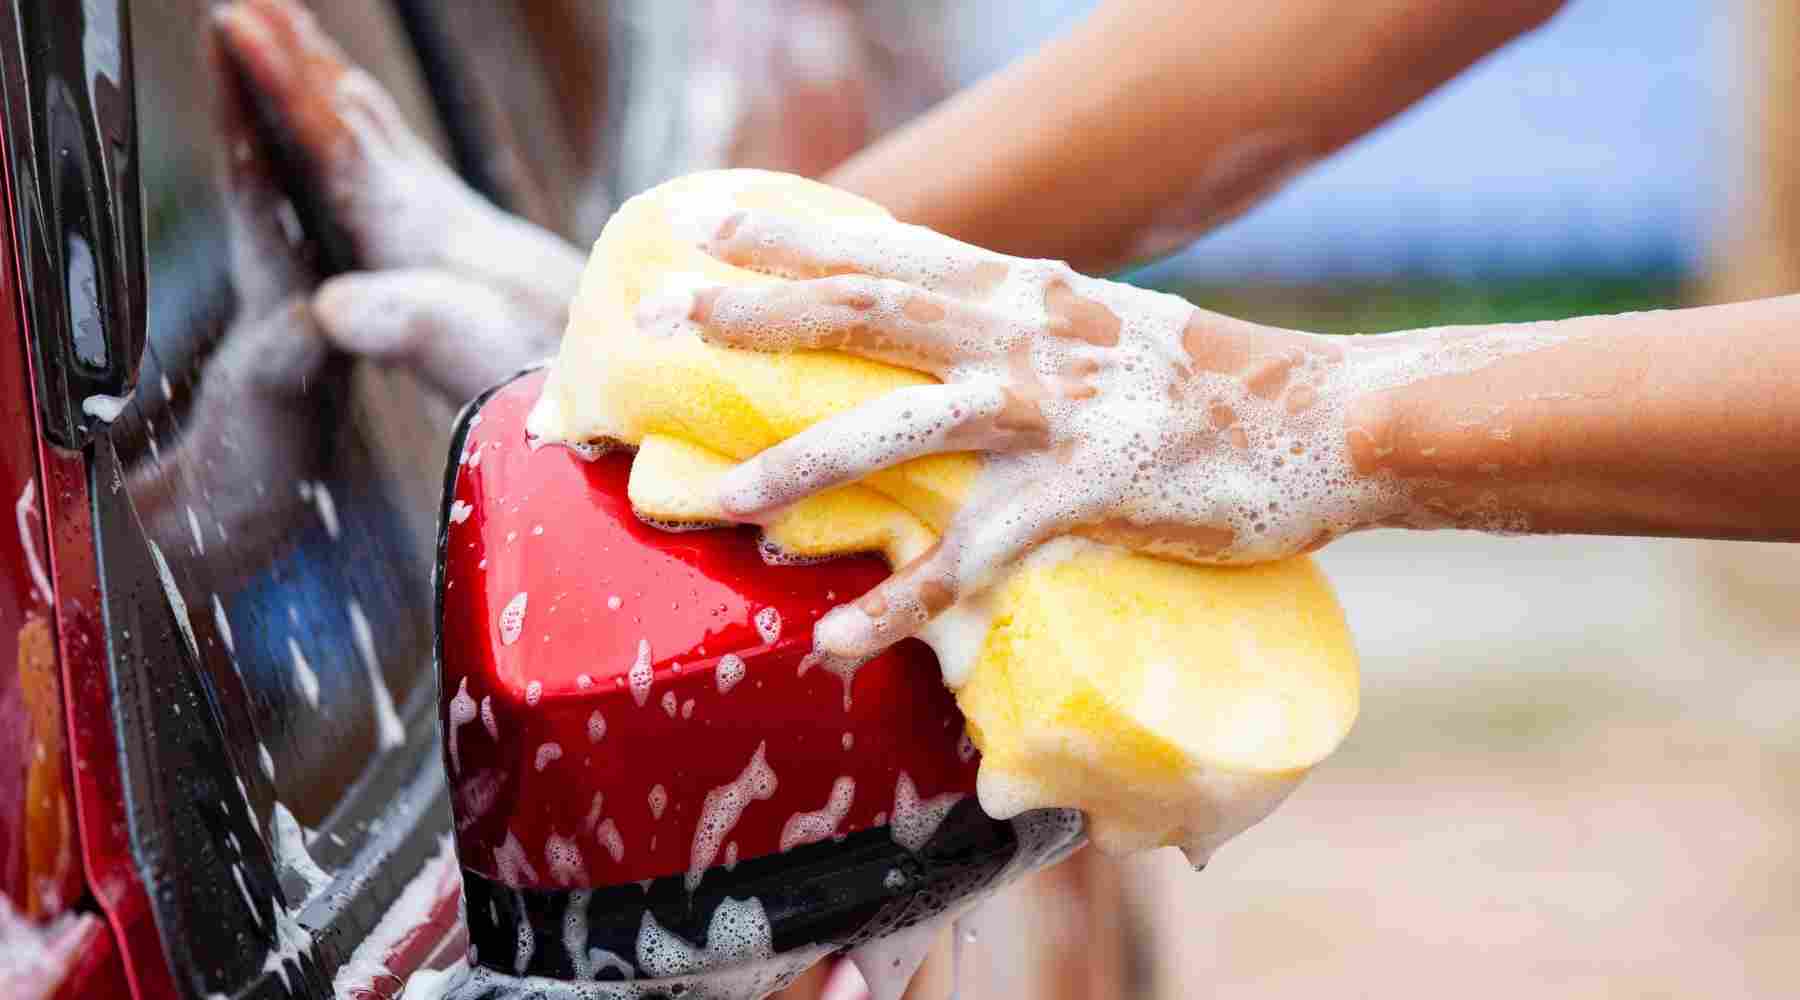 Hobbies that Make Money - Washing Cars